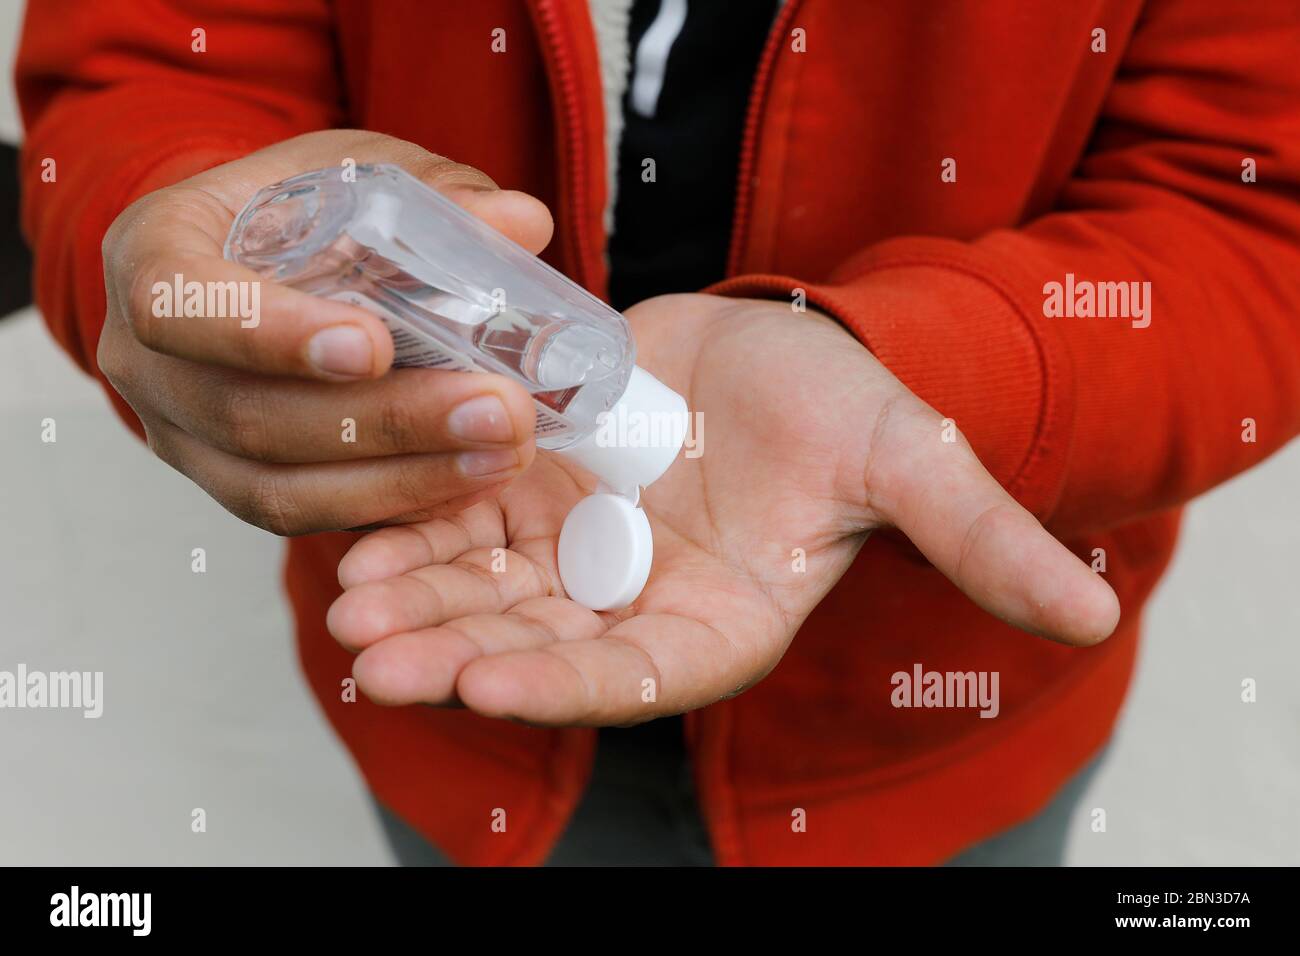 Adolescente limpiando sus manos con gel Foto de stock